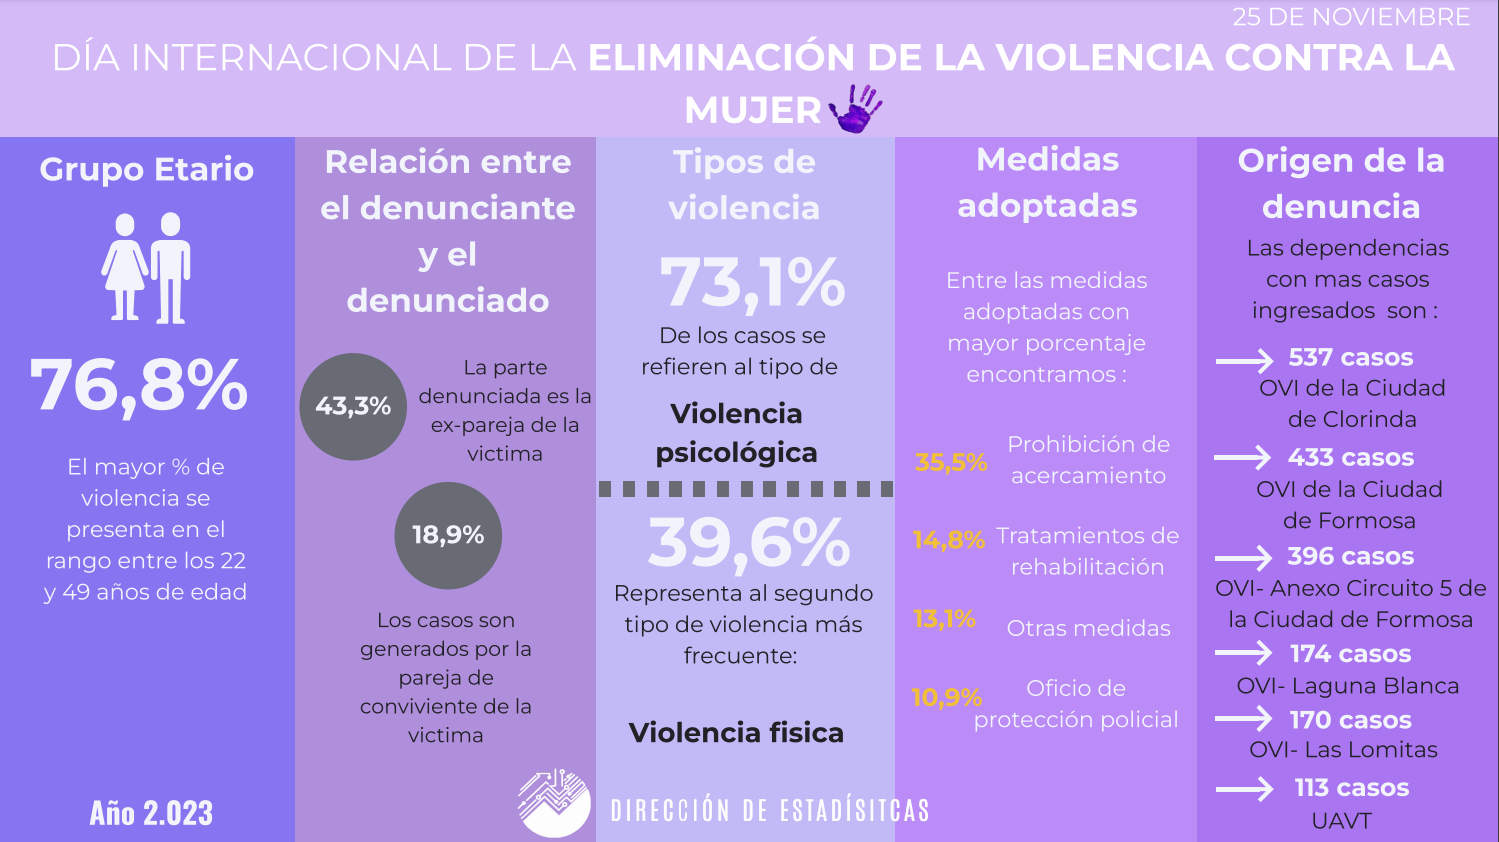 Día Internacional de la Eliminación de la Violencia contra la Mujer - Datos Estadísticos